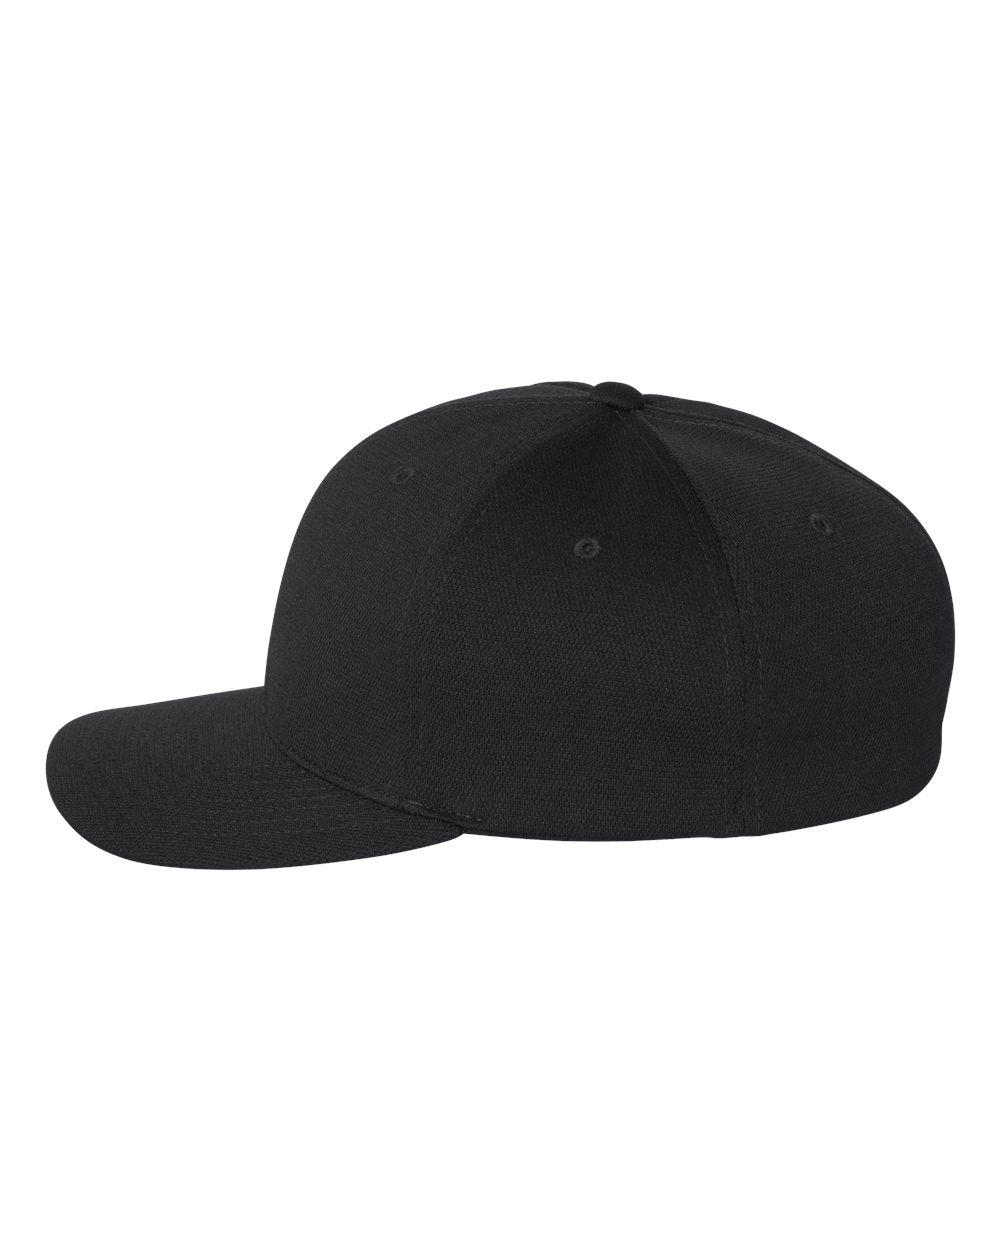 Flexfit Cool & Dry Sport Cap 6597 #color_Black